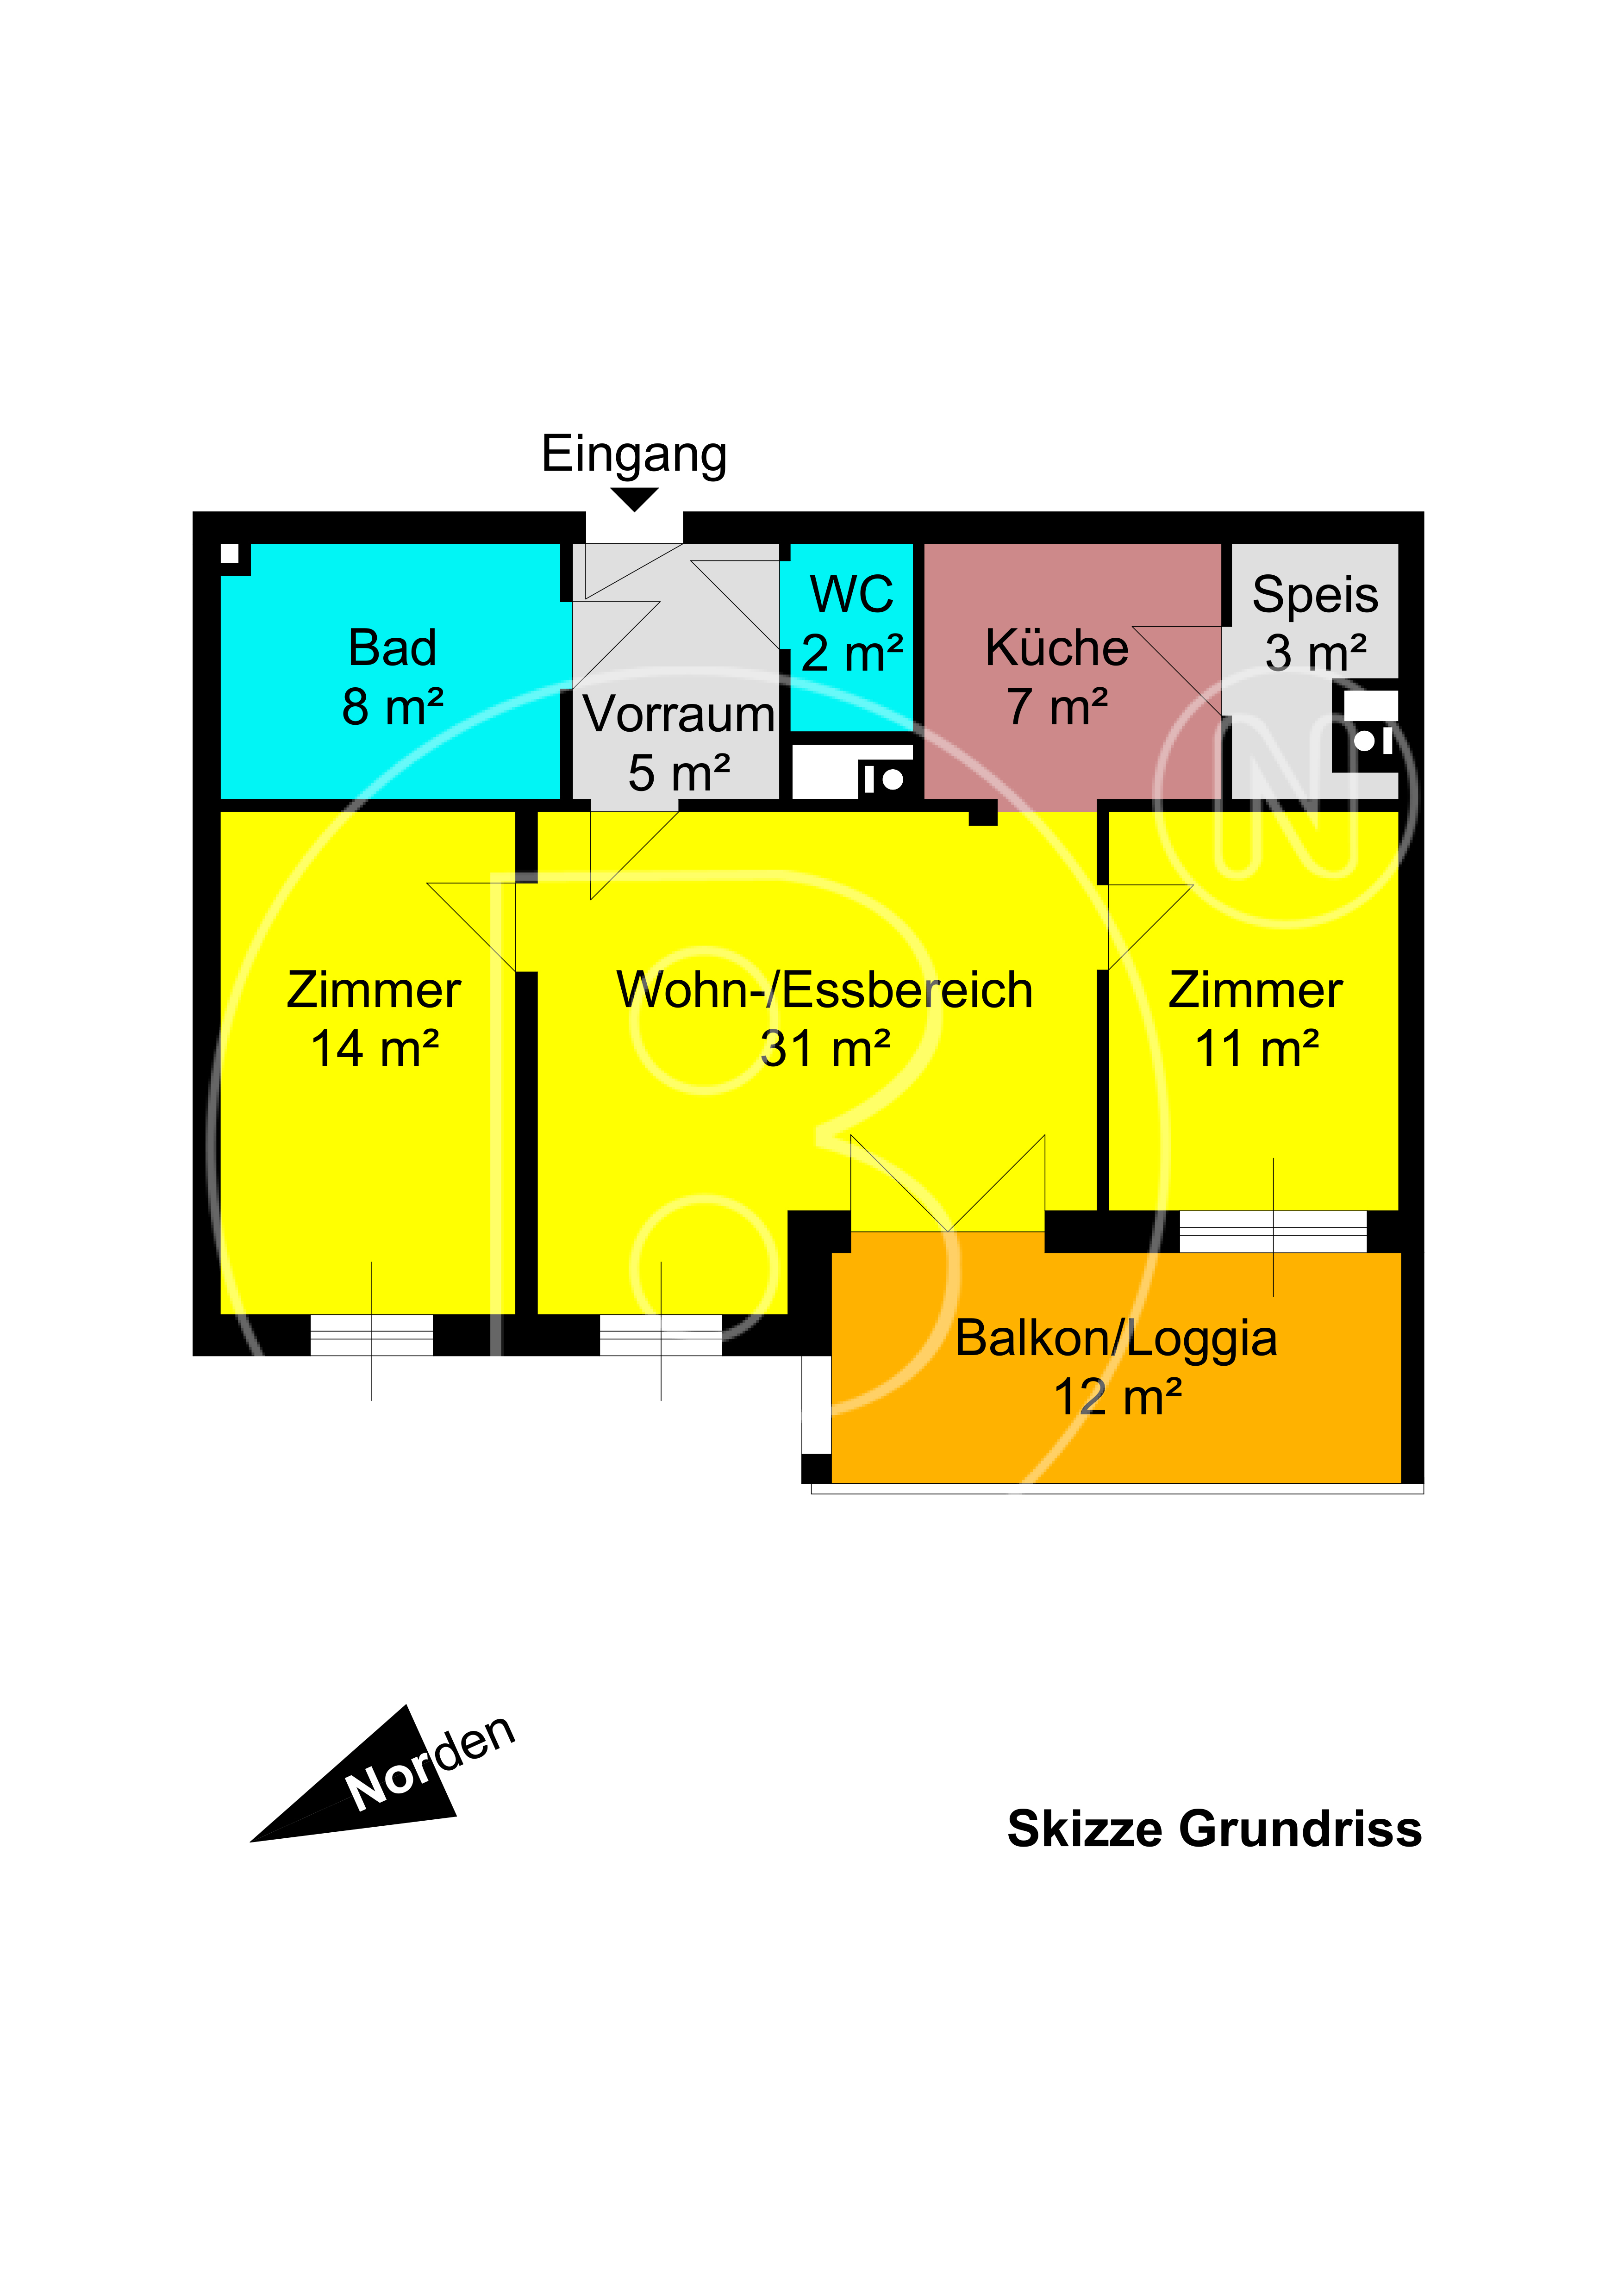 GRUNDRISS - Am Badeteich - Moderne 3-Zimmer-Balkon-Wohnung mit Carportoption!